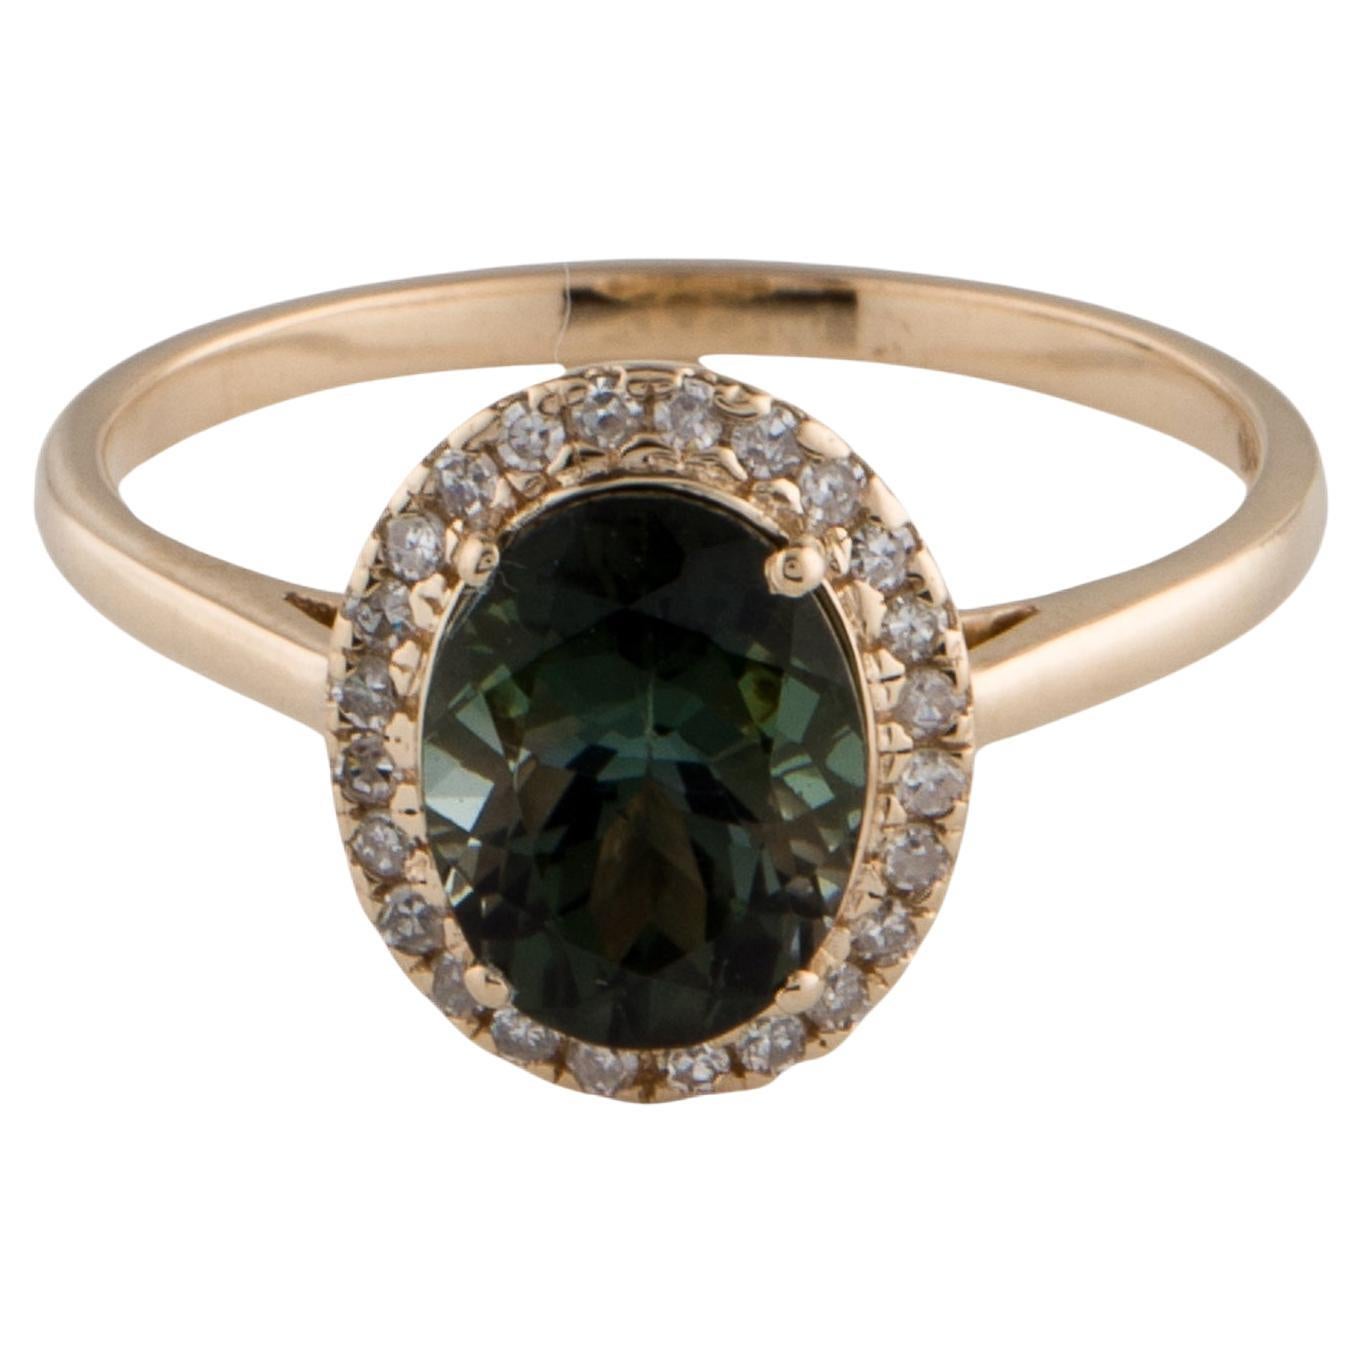 Radiant 14K Tourmaline & Diamond Cocktail Ring - Size 8 - Fine Gemstone Jewelry